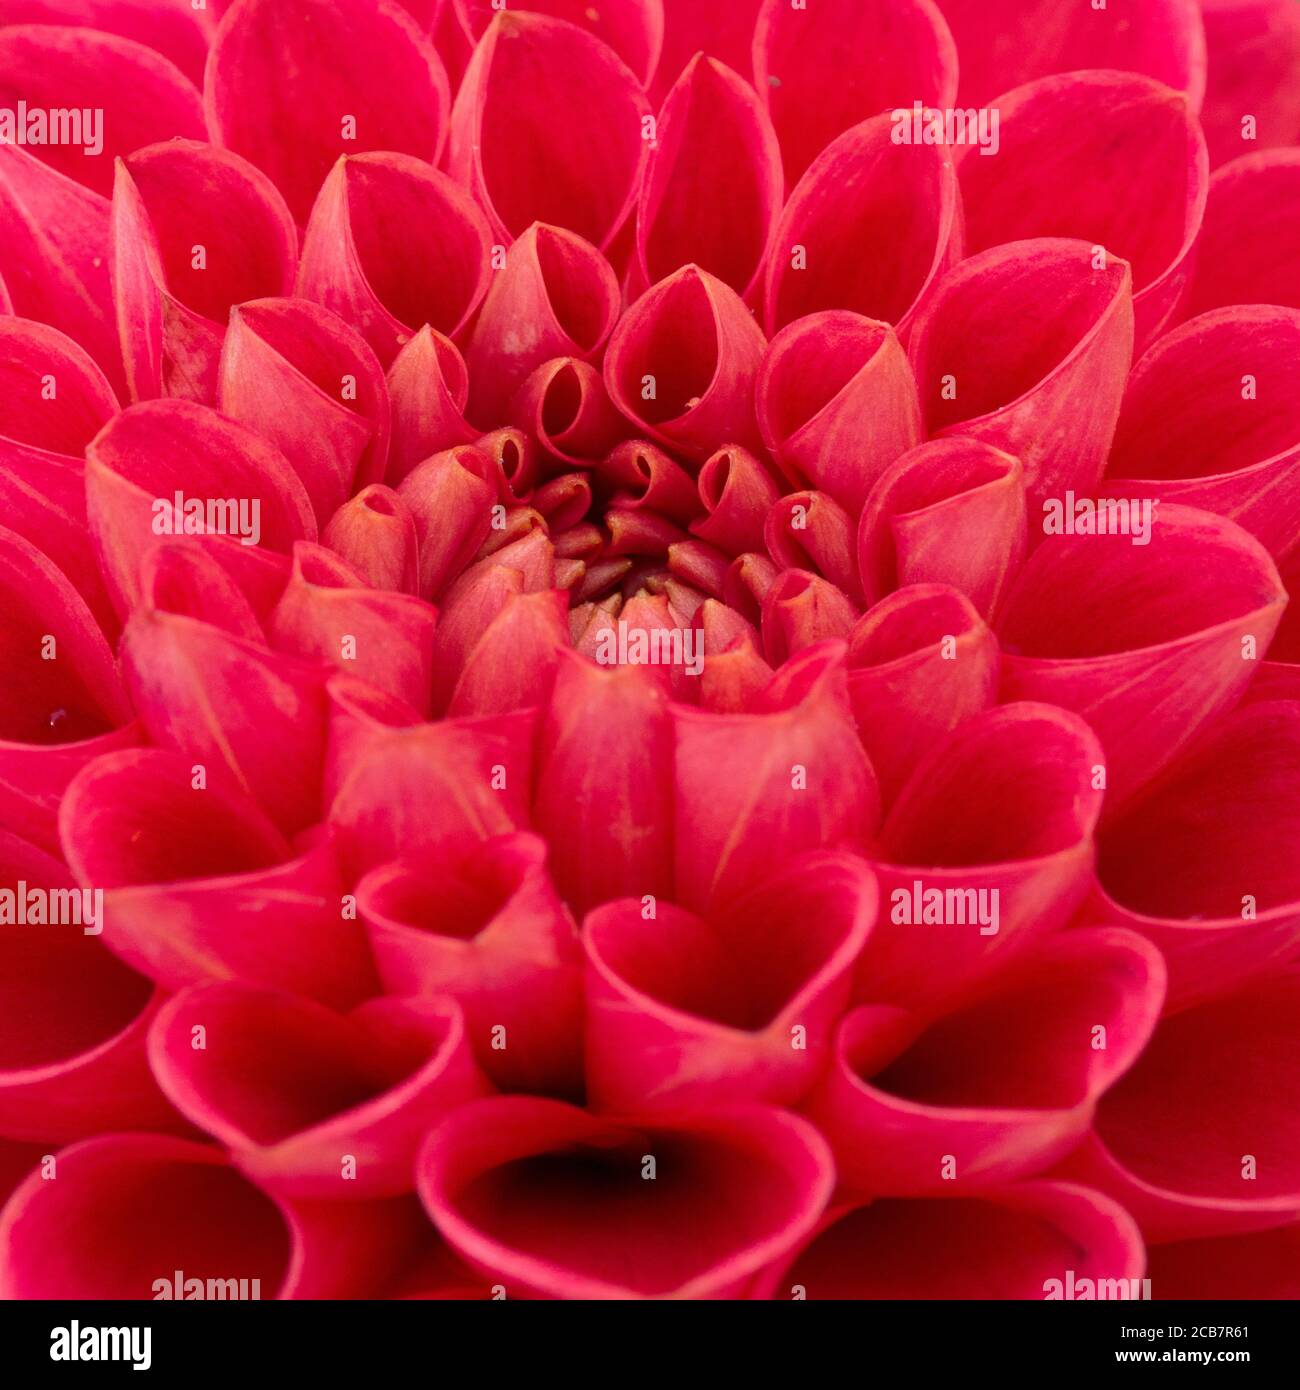 Dahlia, primer plano de flores de color rojo con patrón de pétalos. Foto de stock